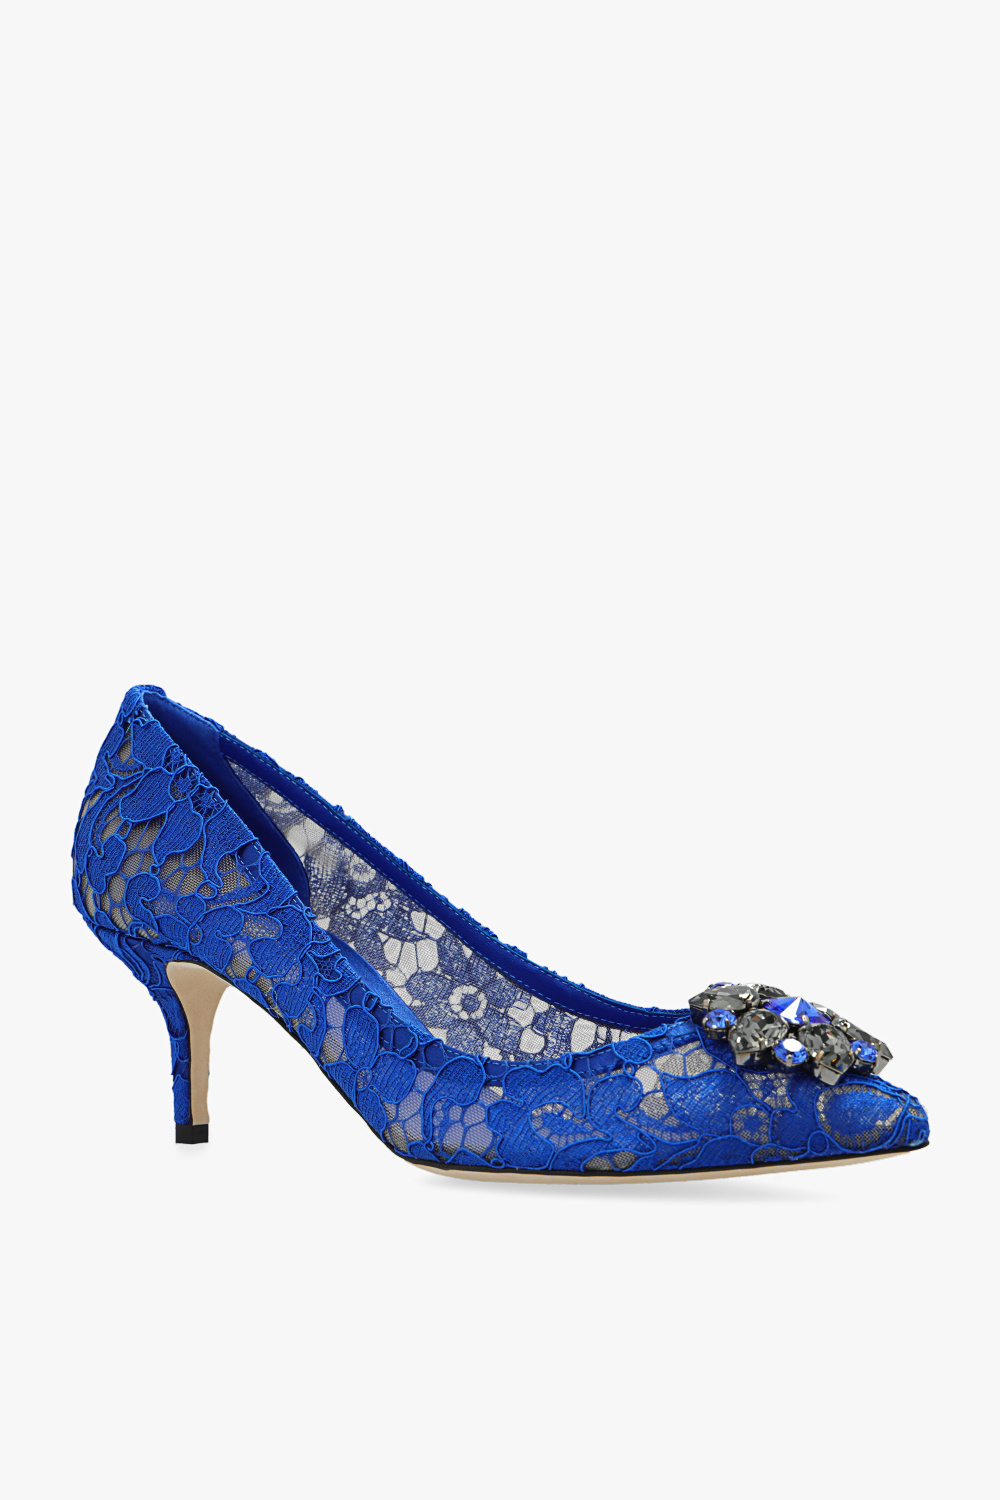 Dolce & Gabbana ‘Bellucci’ lace stiletto pumps